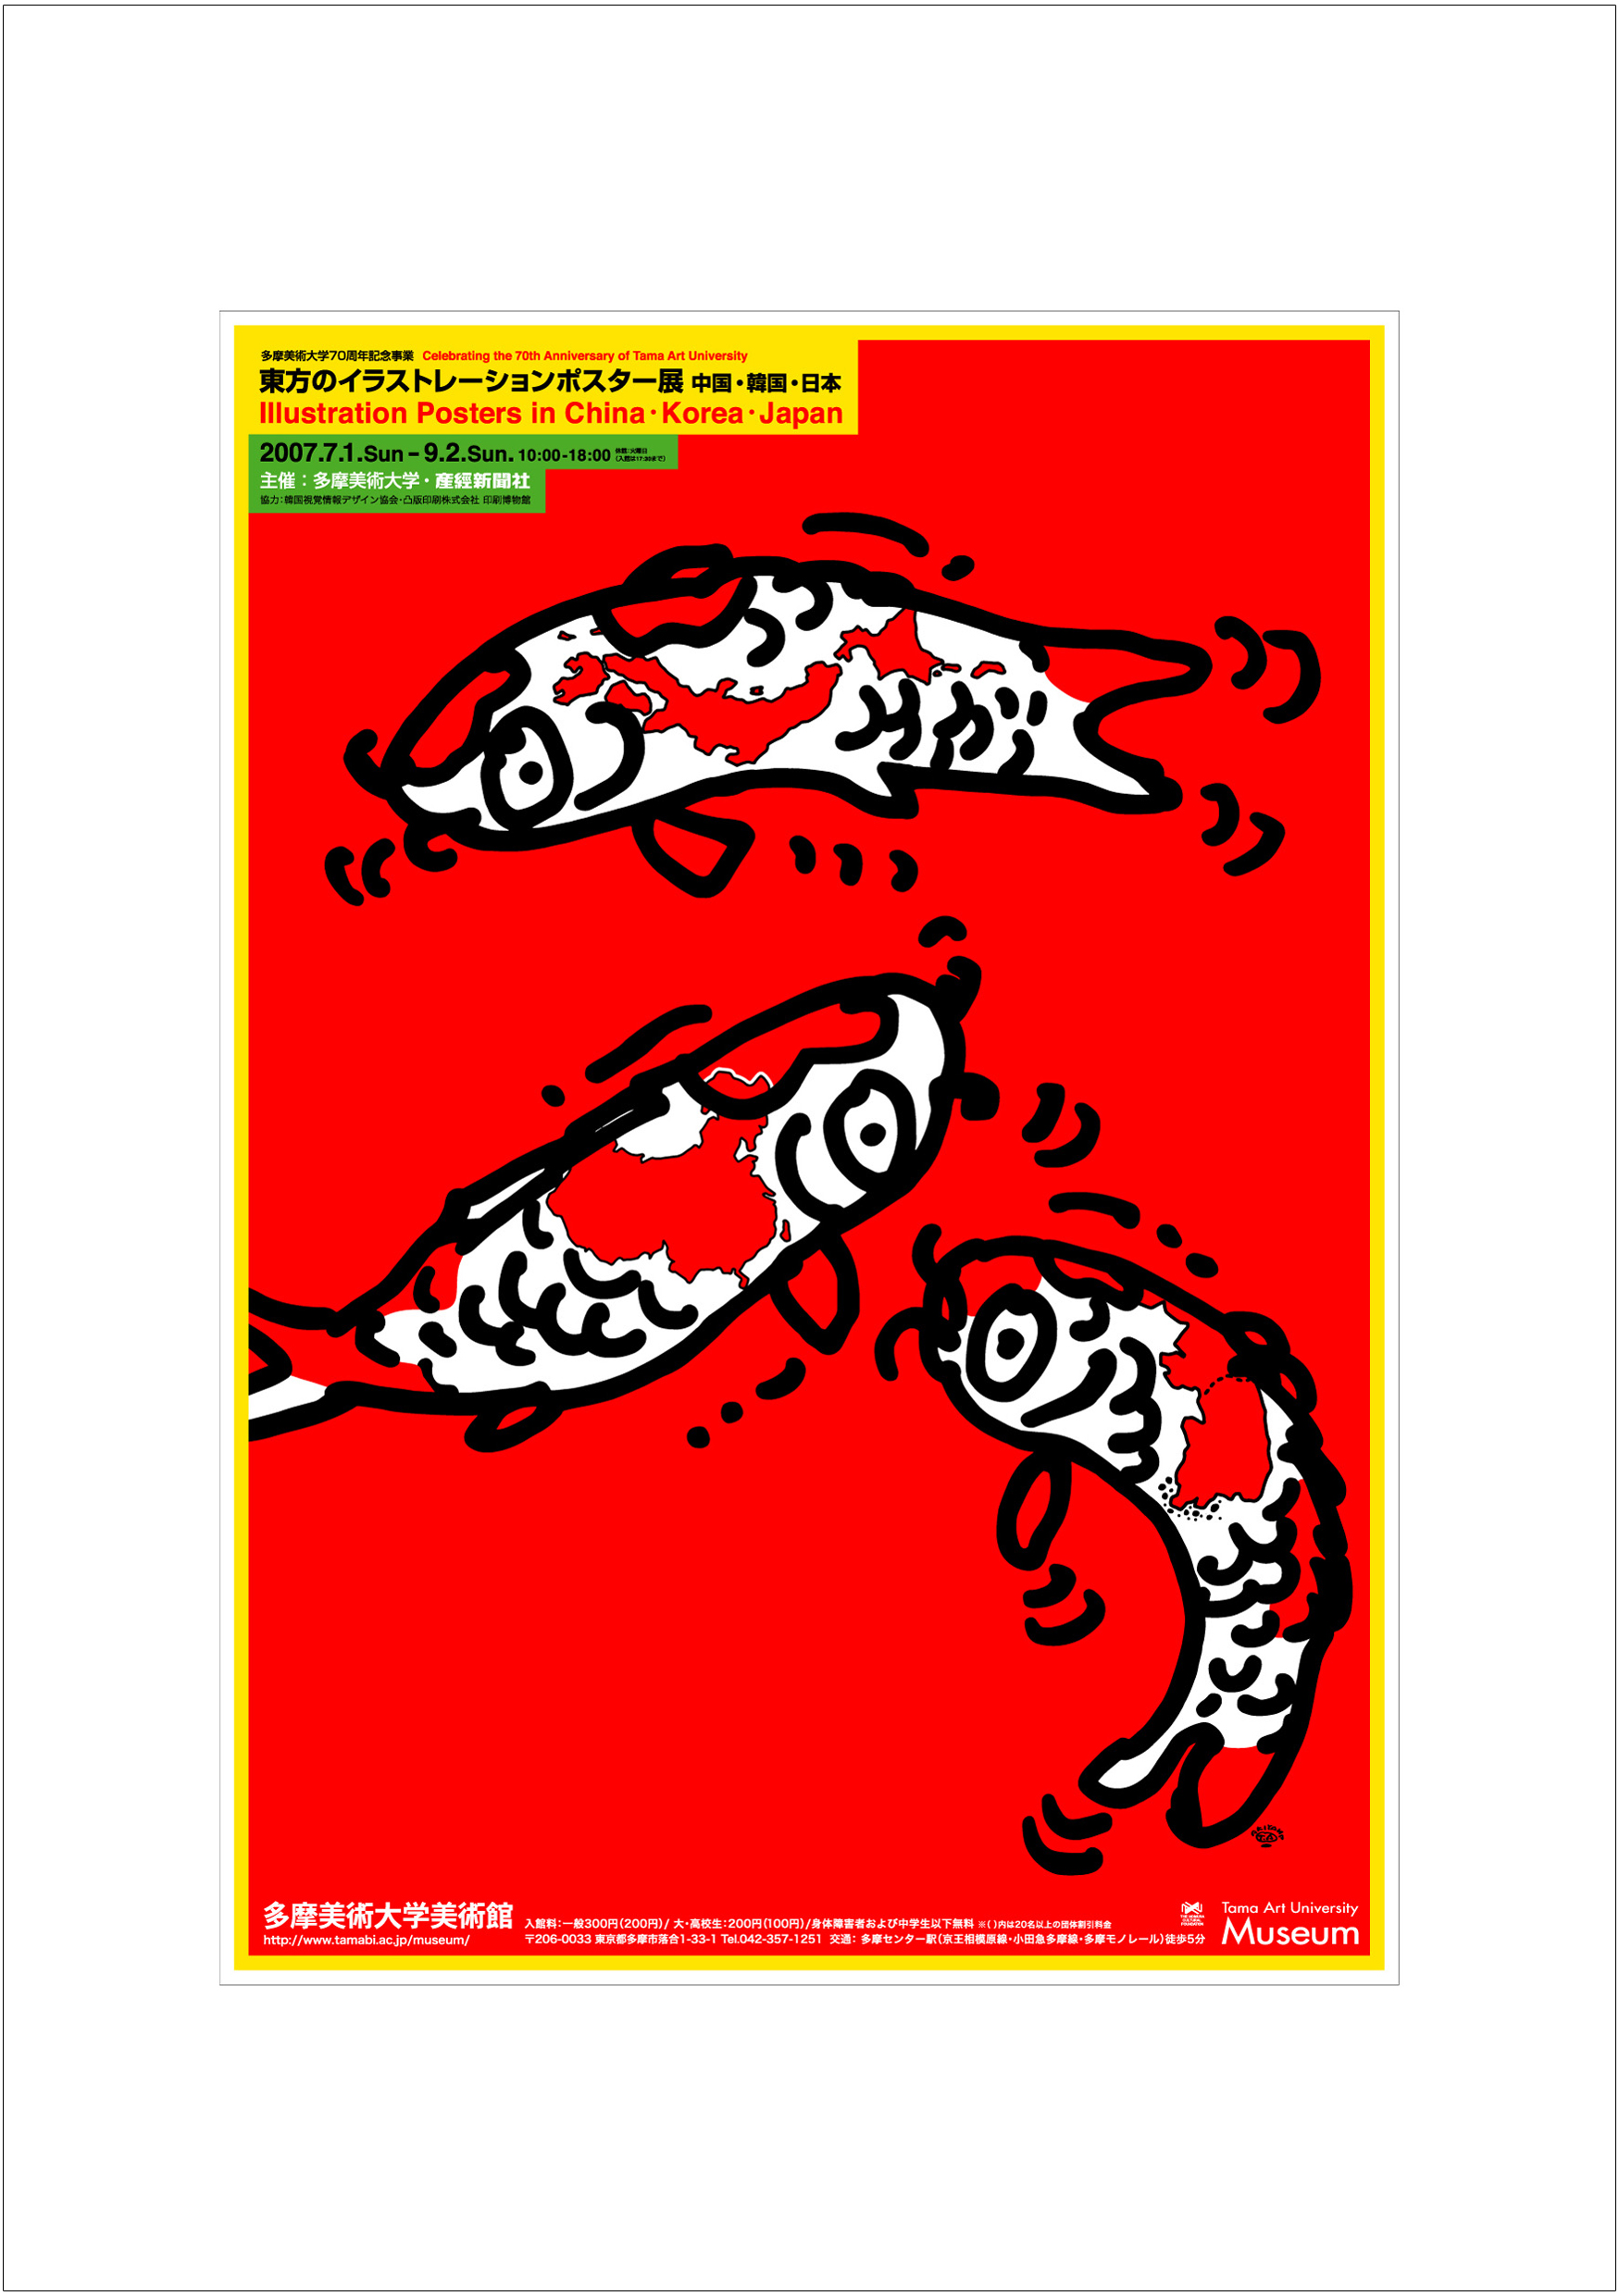 ポスターアーティスト秋山孝が2007年に制作したアートカード「アートカード ポスター 2007 07」